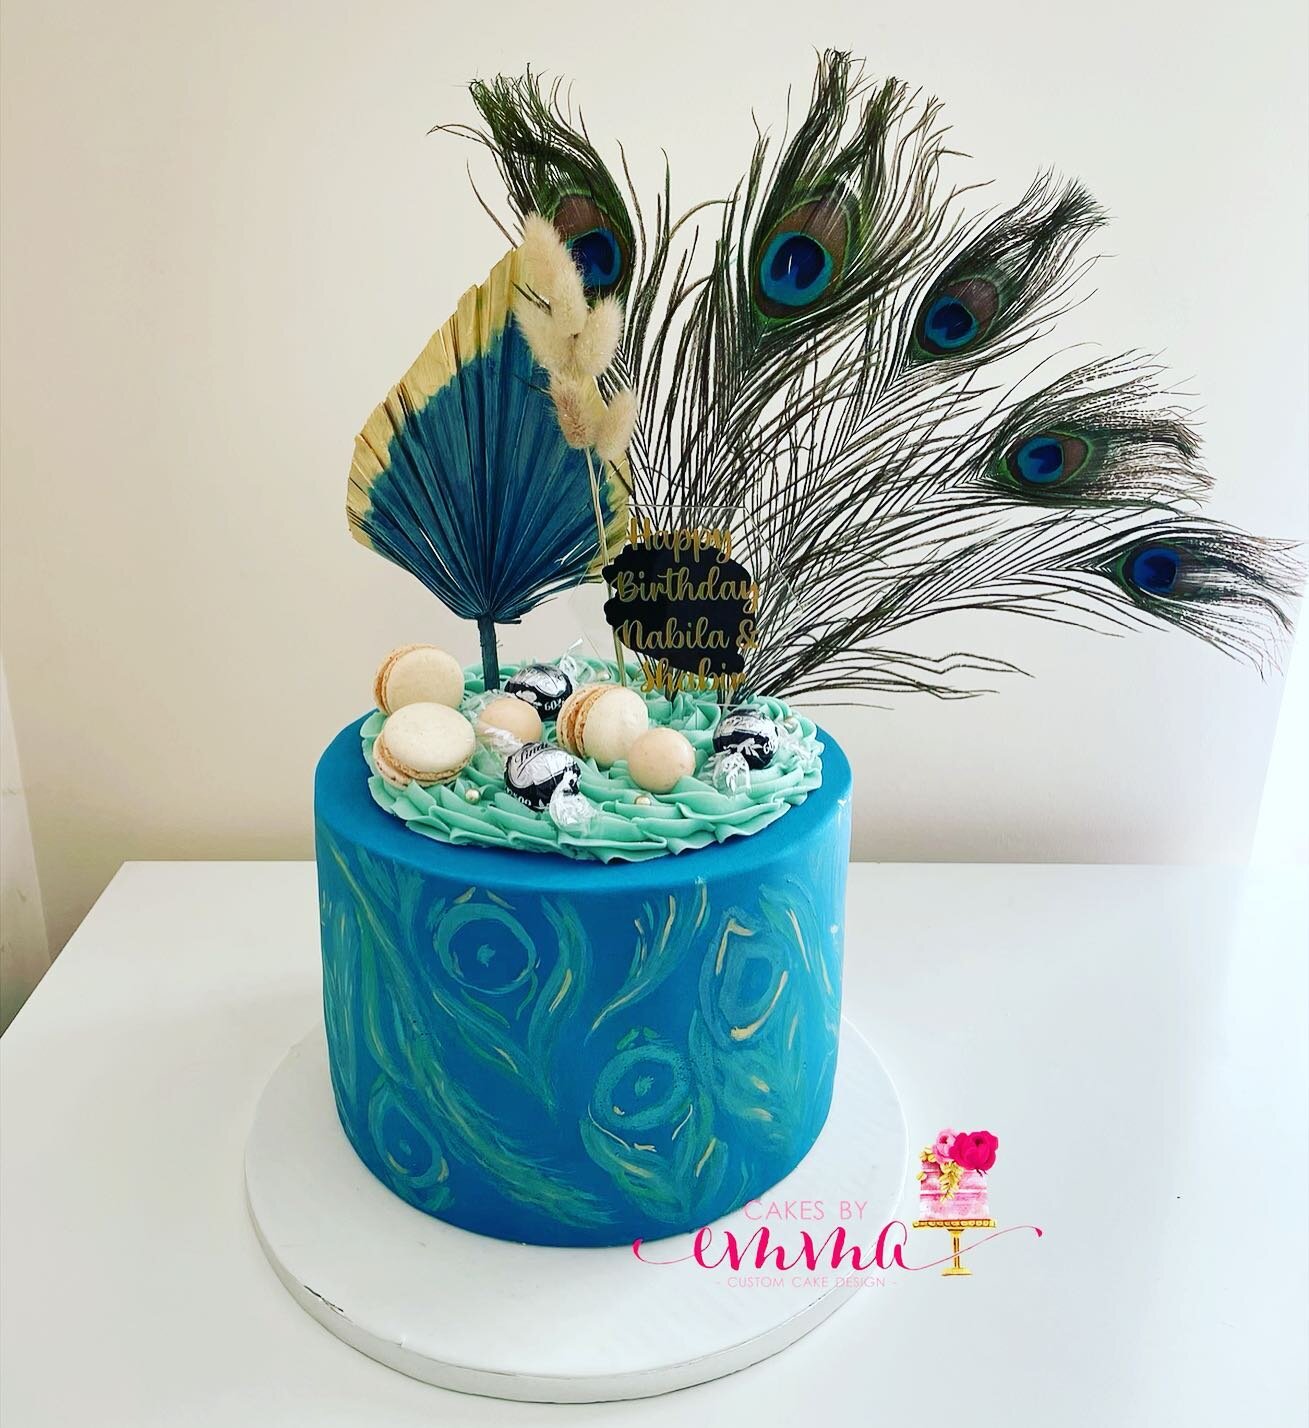 #peacockcake #prettycakes #birthday #cake #birthdaycake #prestwoodcakes #greatmissendencakes #highwycombecakes #buckscakes